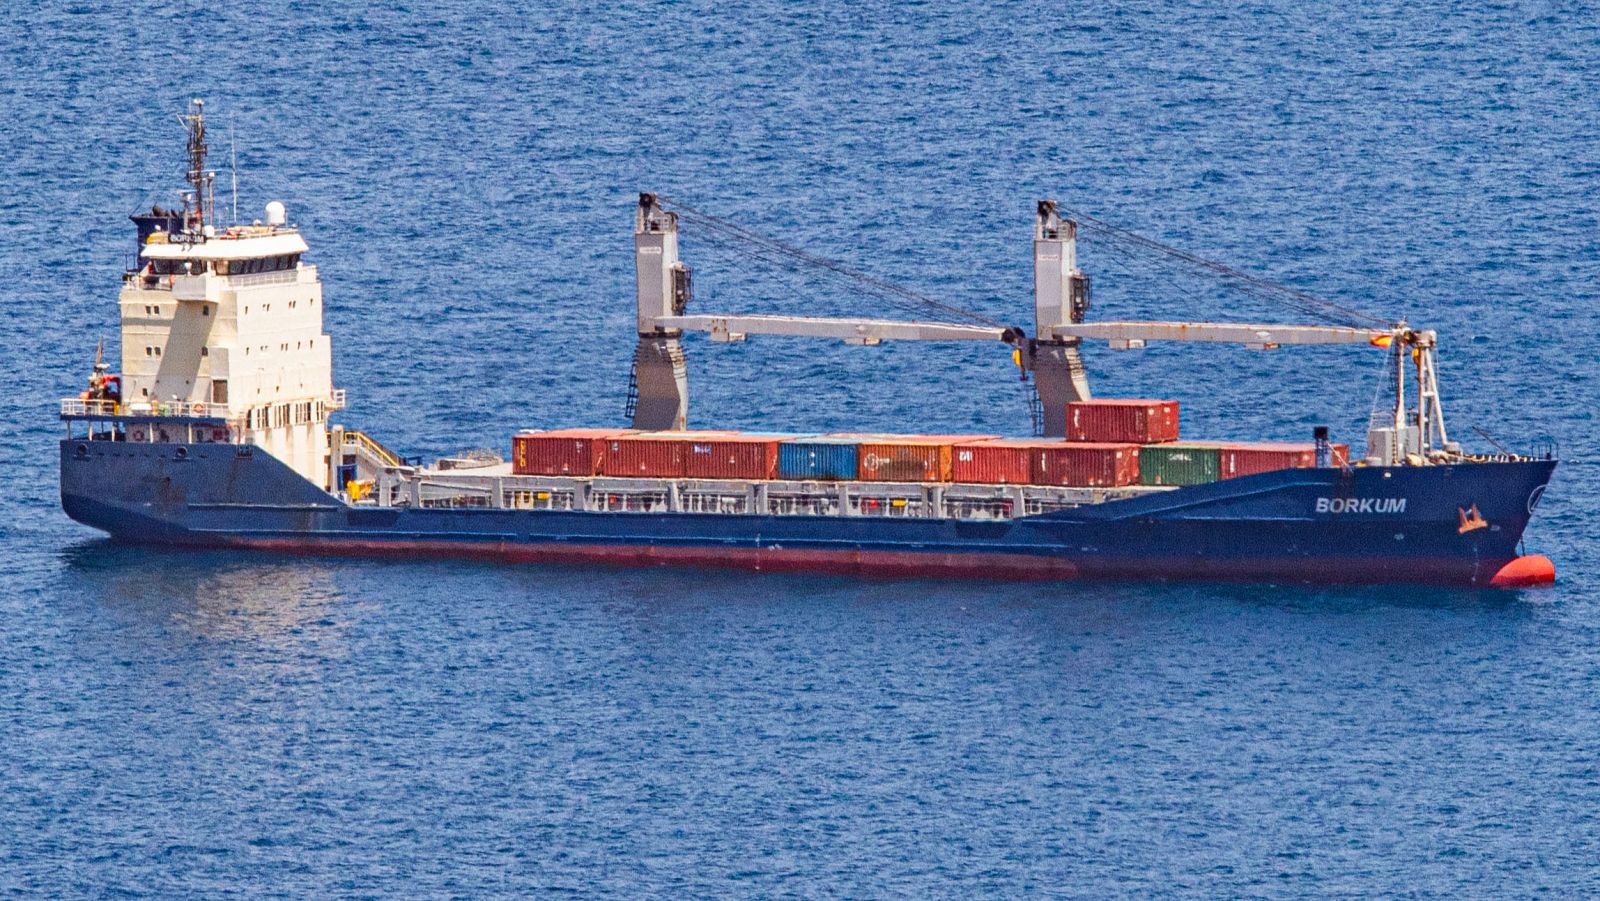 Continúa la polémica alrededor del carguero Borkum, que recalará este viernes en Cartagena